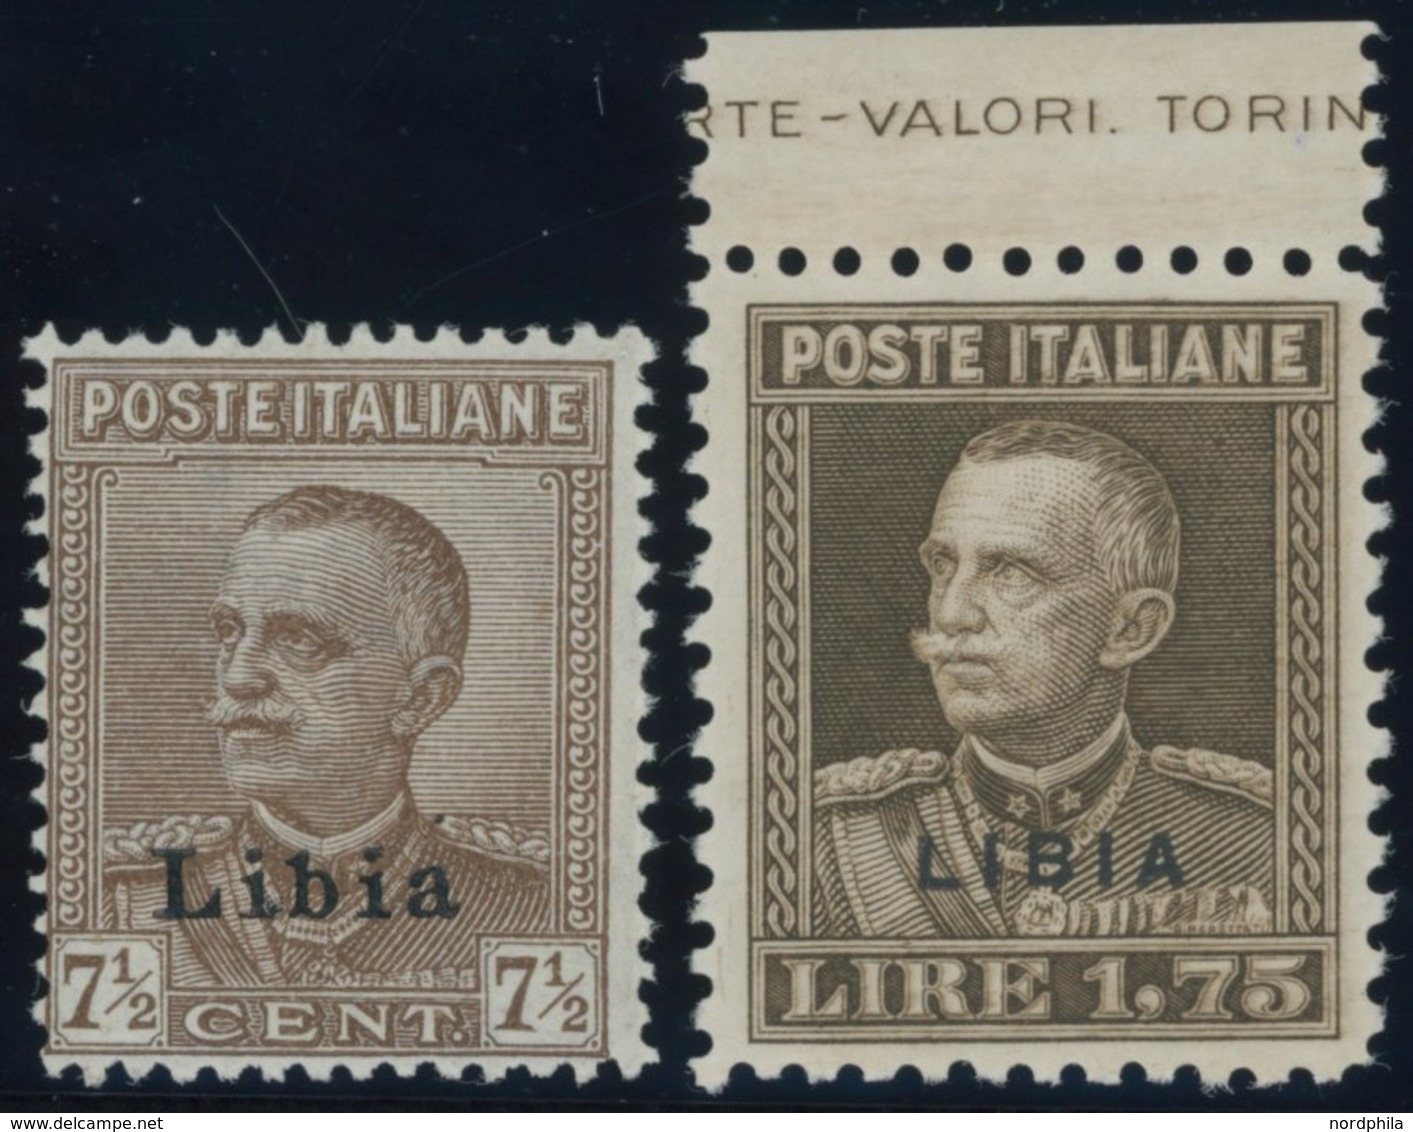 ITALIENISCH-LYBIEN 68,70A **, 1928, 71/2 Und 1.75 L. König Emanuel III, Gezähnt 11, 2 Postfrische Prachtwerte - Libyen